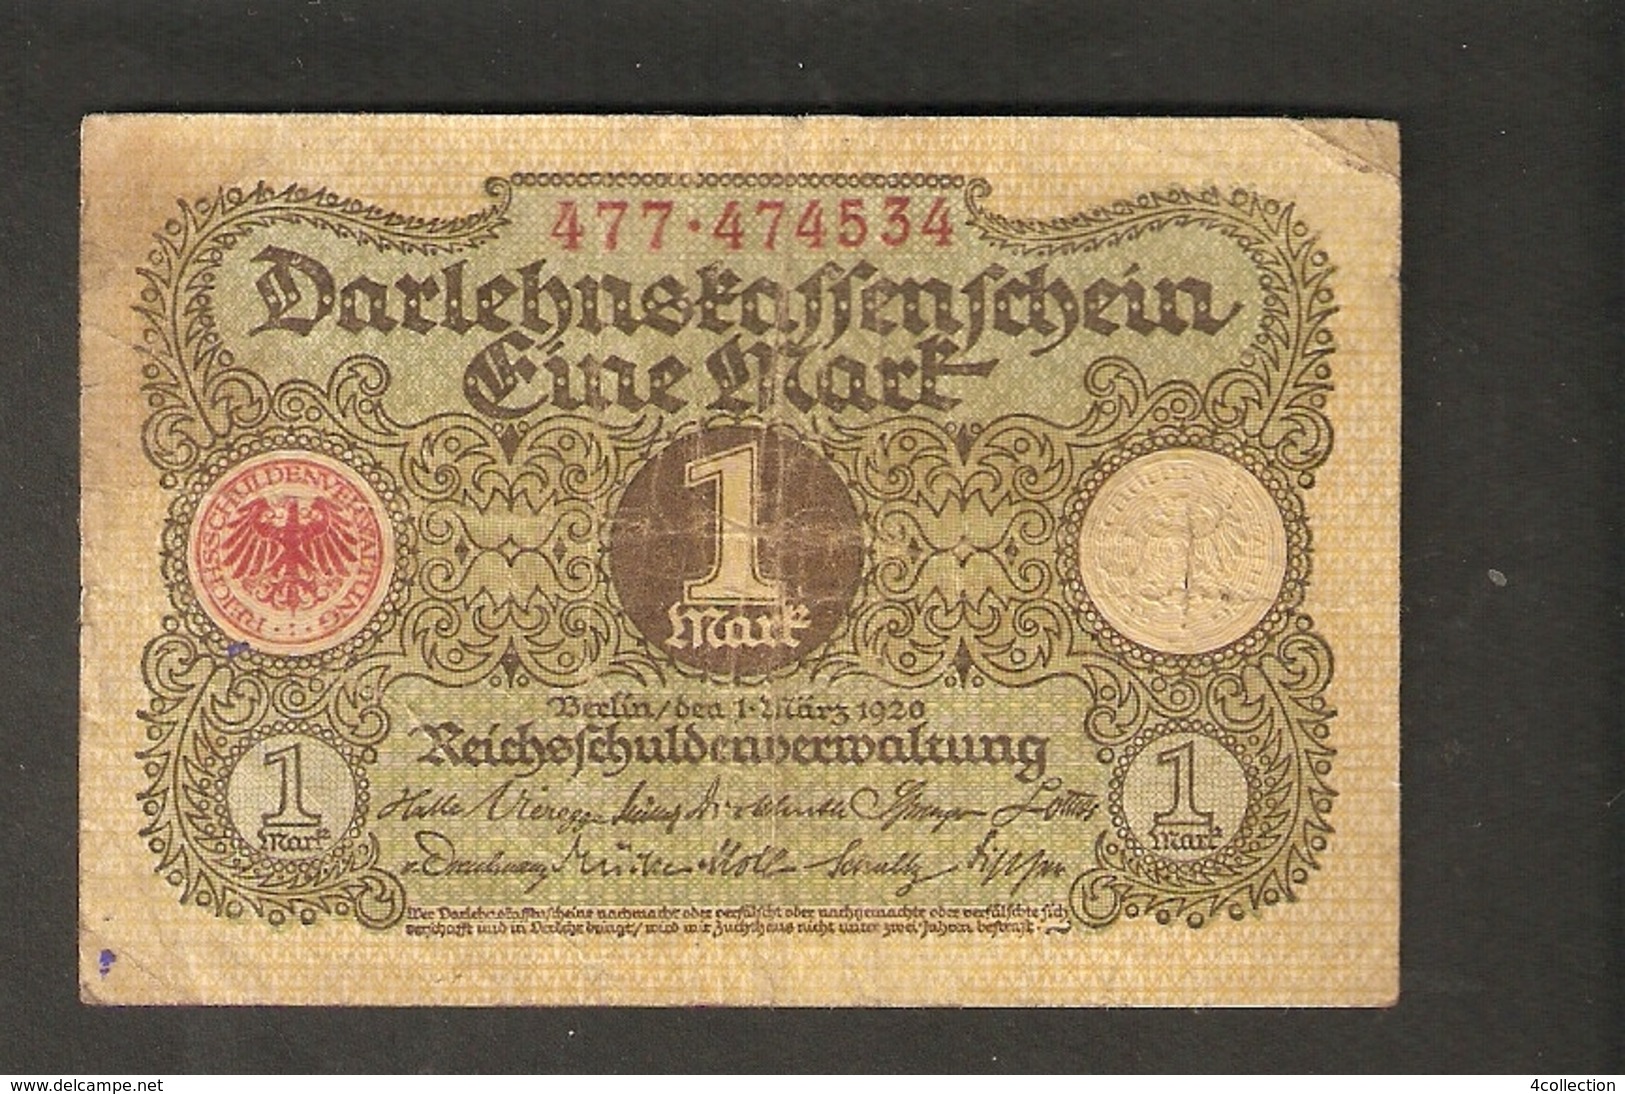 Pa. Germany Weimar Republic Darlehenskassenschein 1 MARK 1920 - # 477 . 474534 - 1 Mark